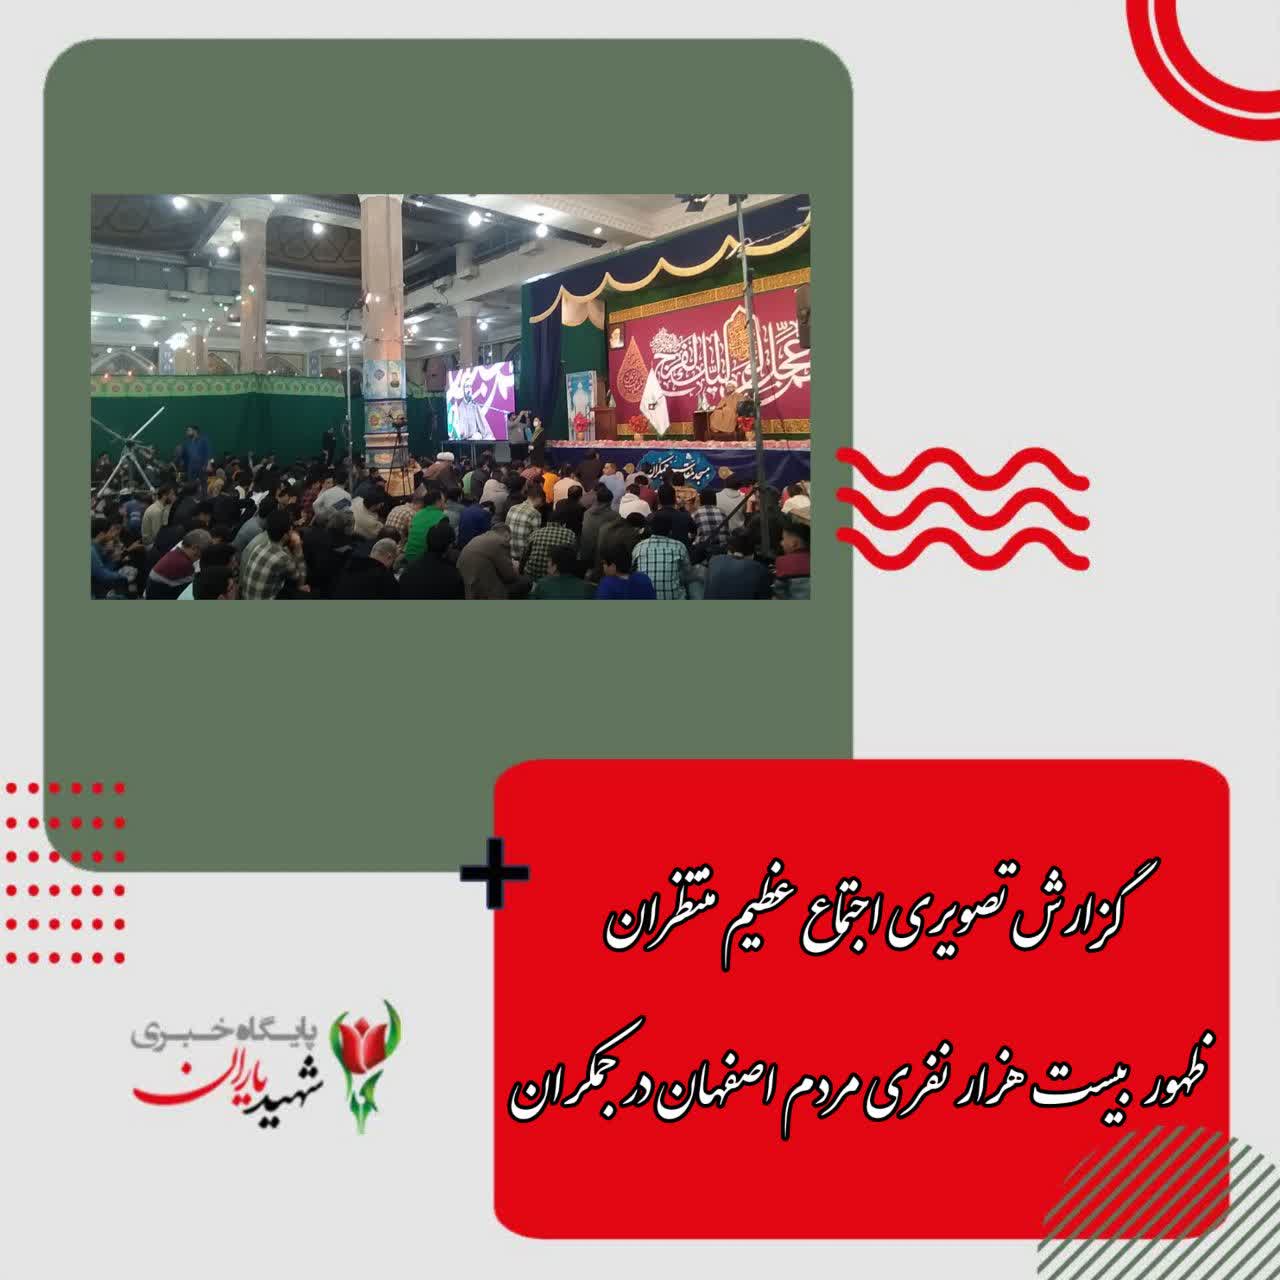 گزارش تصویری از اجتماع عظیم منتظران ظهور بیست هزار نفری مردم اصفهان در جمکران: